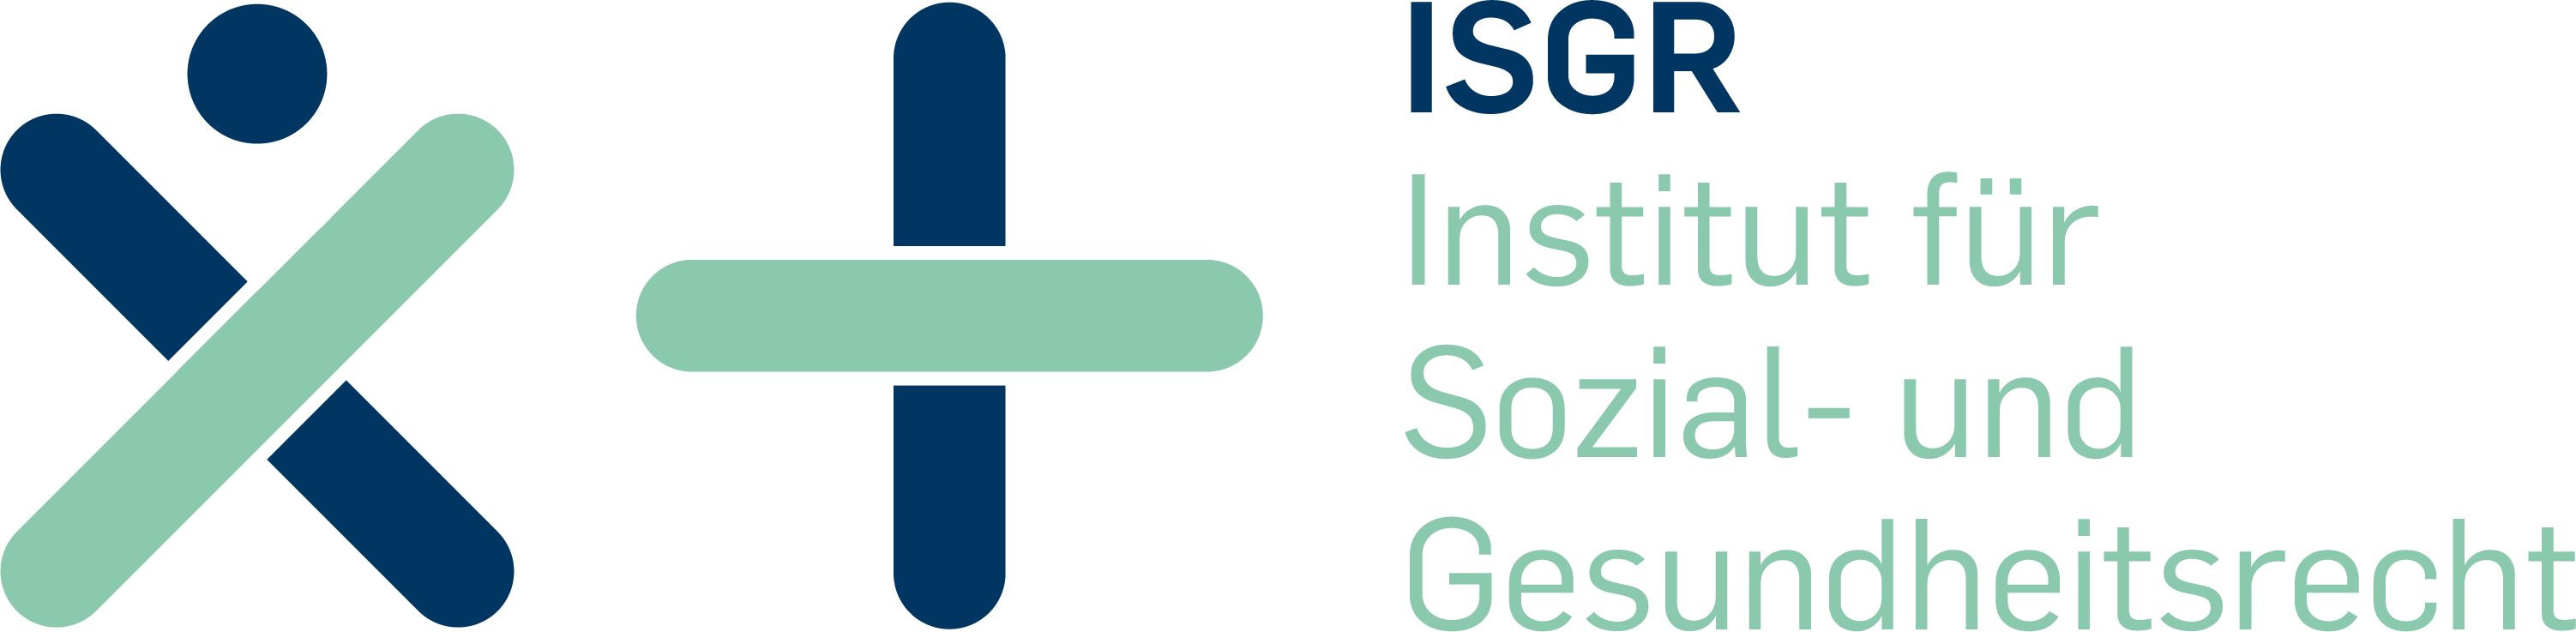 Logo ISGR